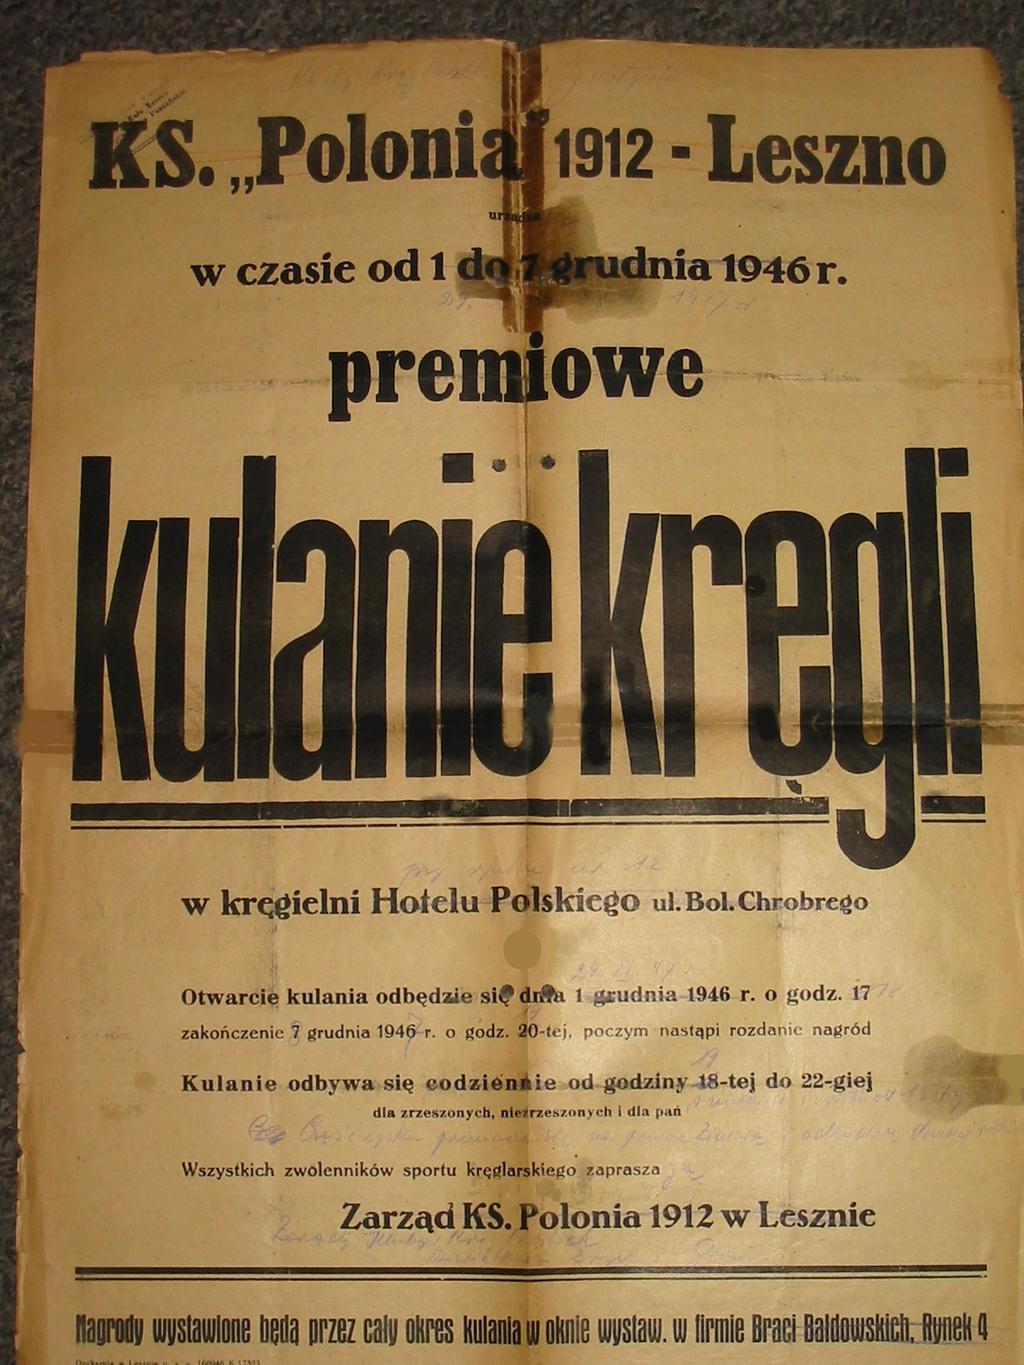 Pawełczak i R. Kornas z Polonii. Znaczne ożywienie życia sportowego nastąpiło w 1946 r. poprzez mecze międzyklubowe, turnieje okolicznościowe i zawody wewnątrzklubowe.